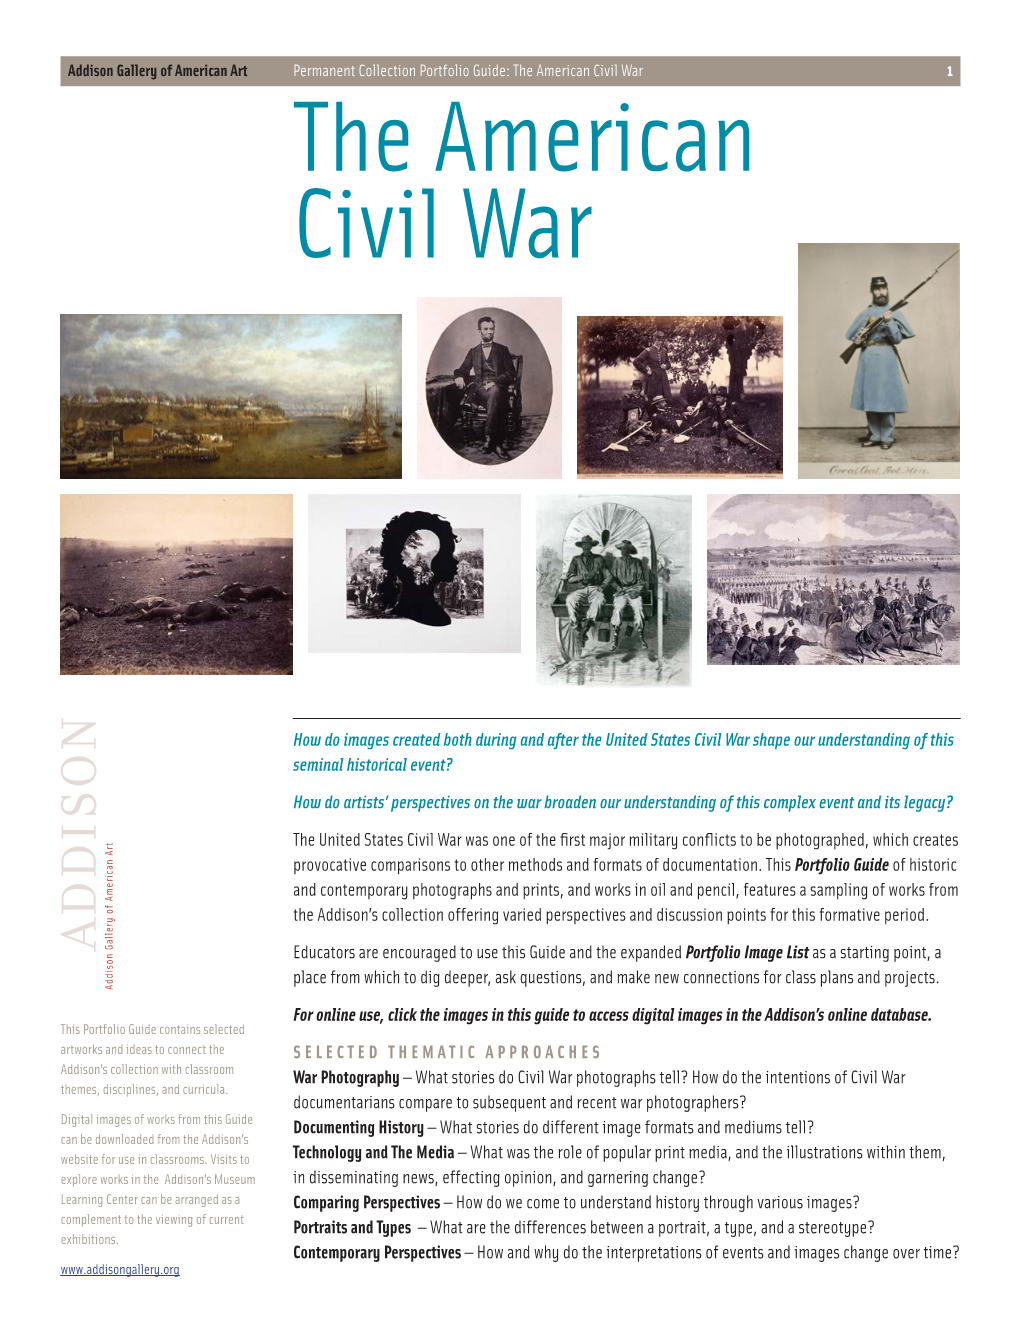 The American Civil War 1 the American Civil War